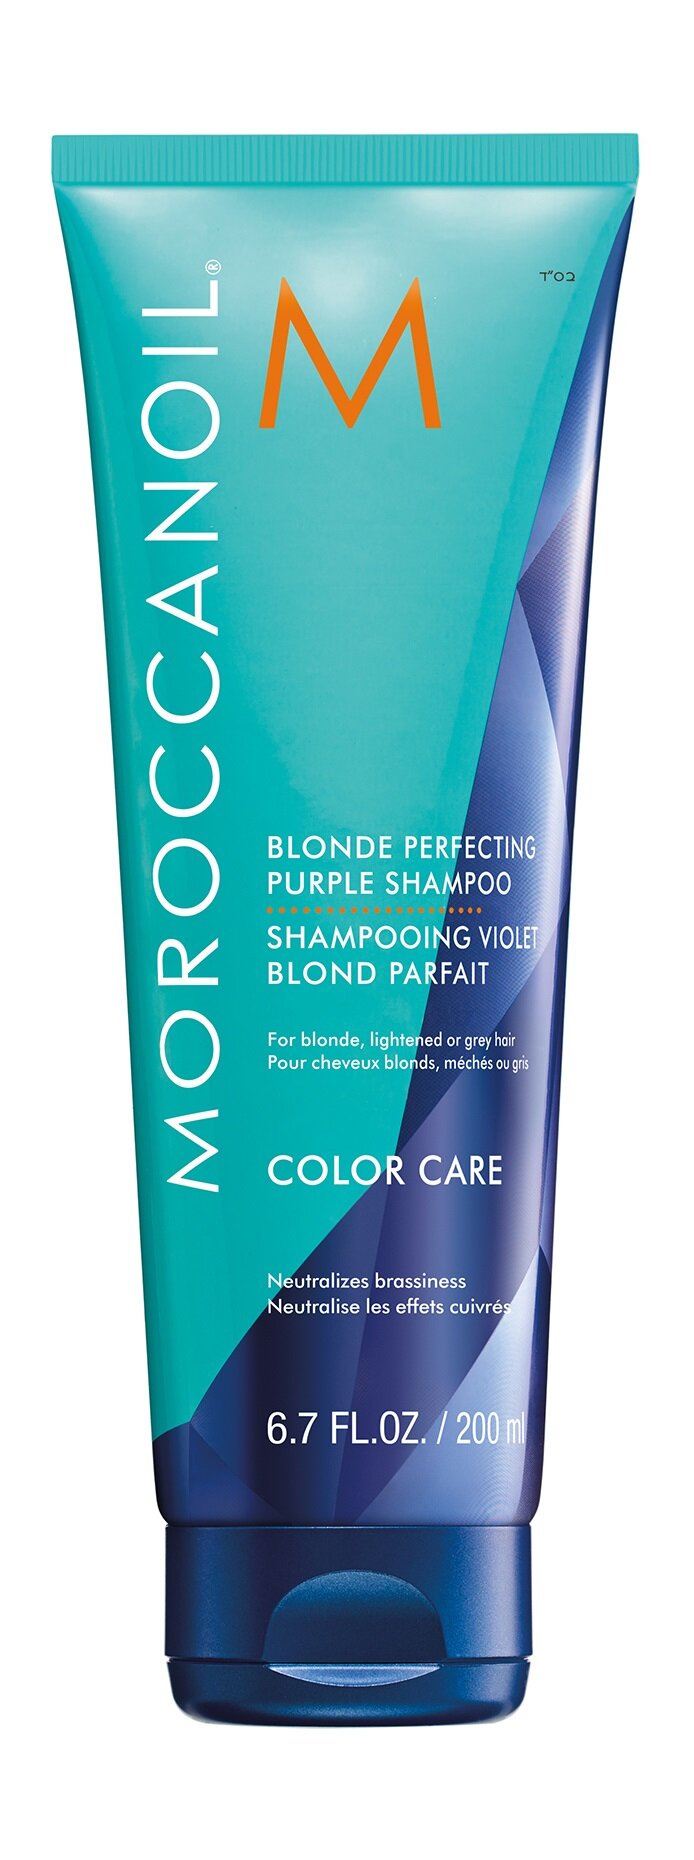 Тонирующий шампунь с фиолетовым пигментом для нейтрализации желтого тона волос Moroccanoil Blonde Perfecting Purple Shampoo 200 мл .